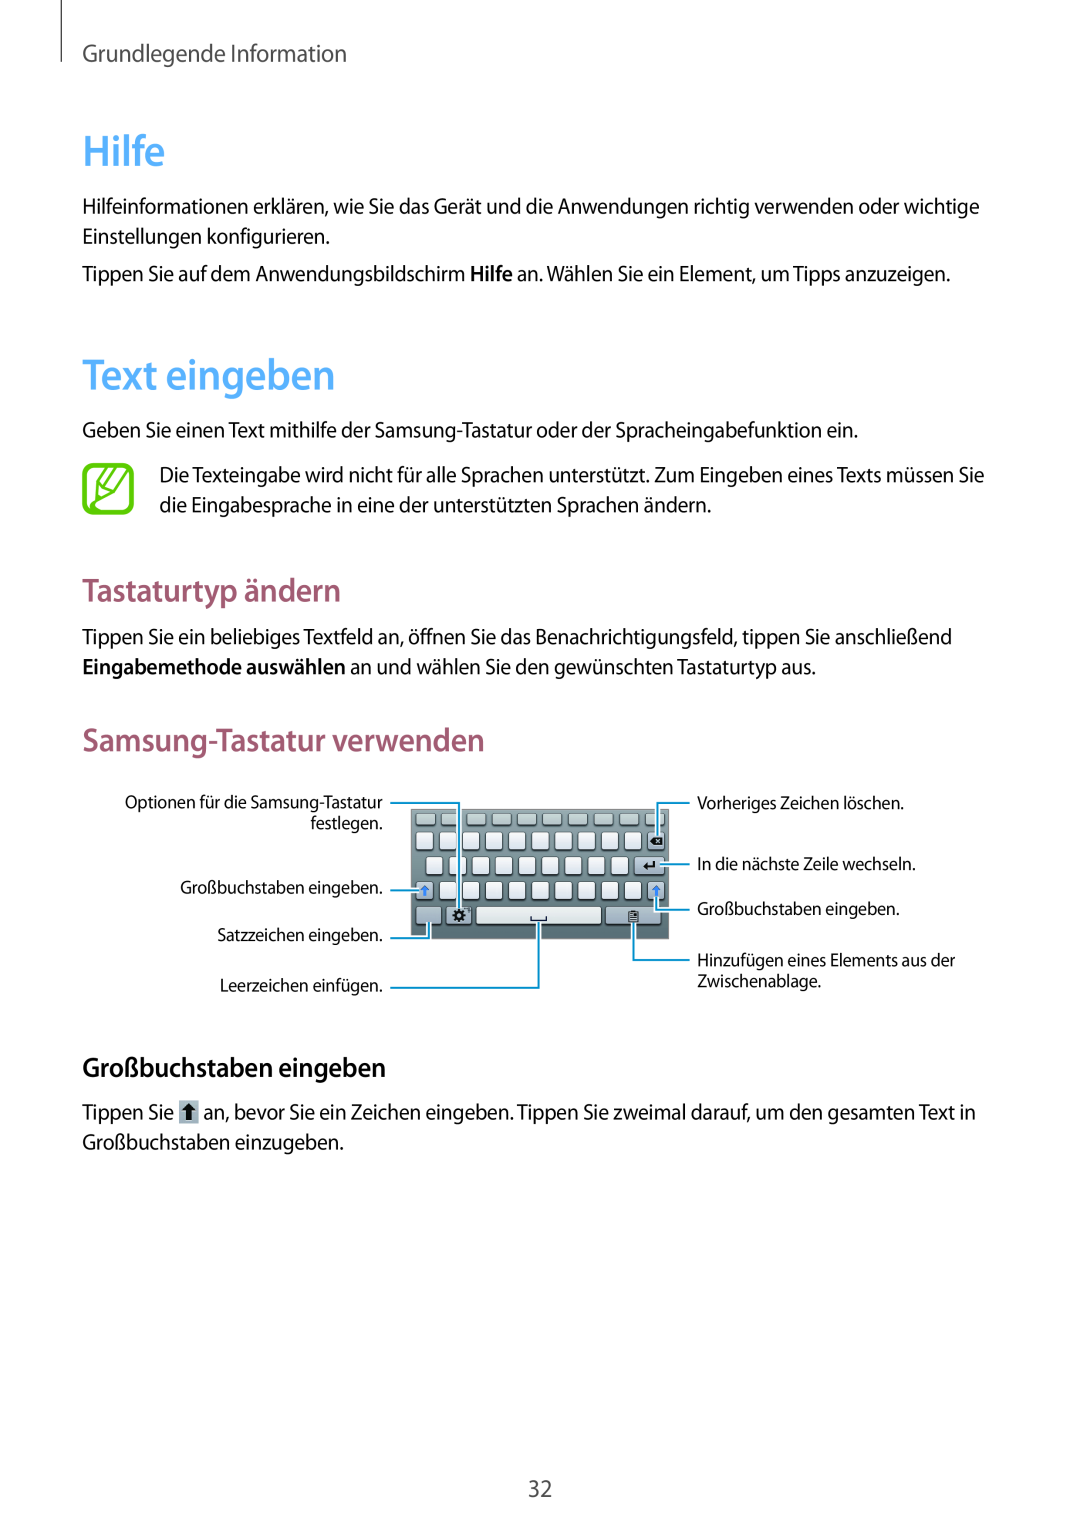 Samsung SM-T2100MKADBT manual Hilfe, Text eingeben, Tastaturtyp ändern, Samsung-Tastatur verwenden, Großbuchstaben eingeben 